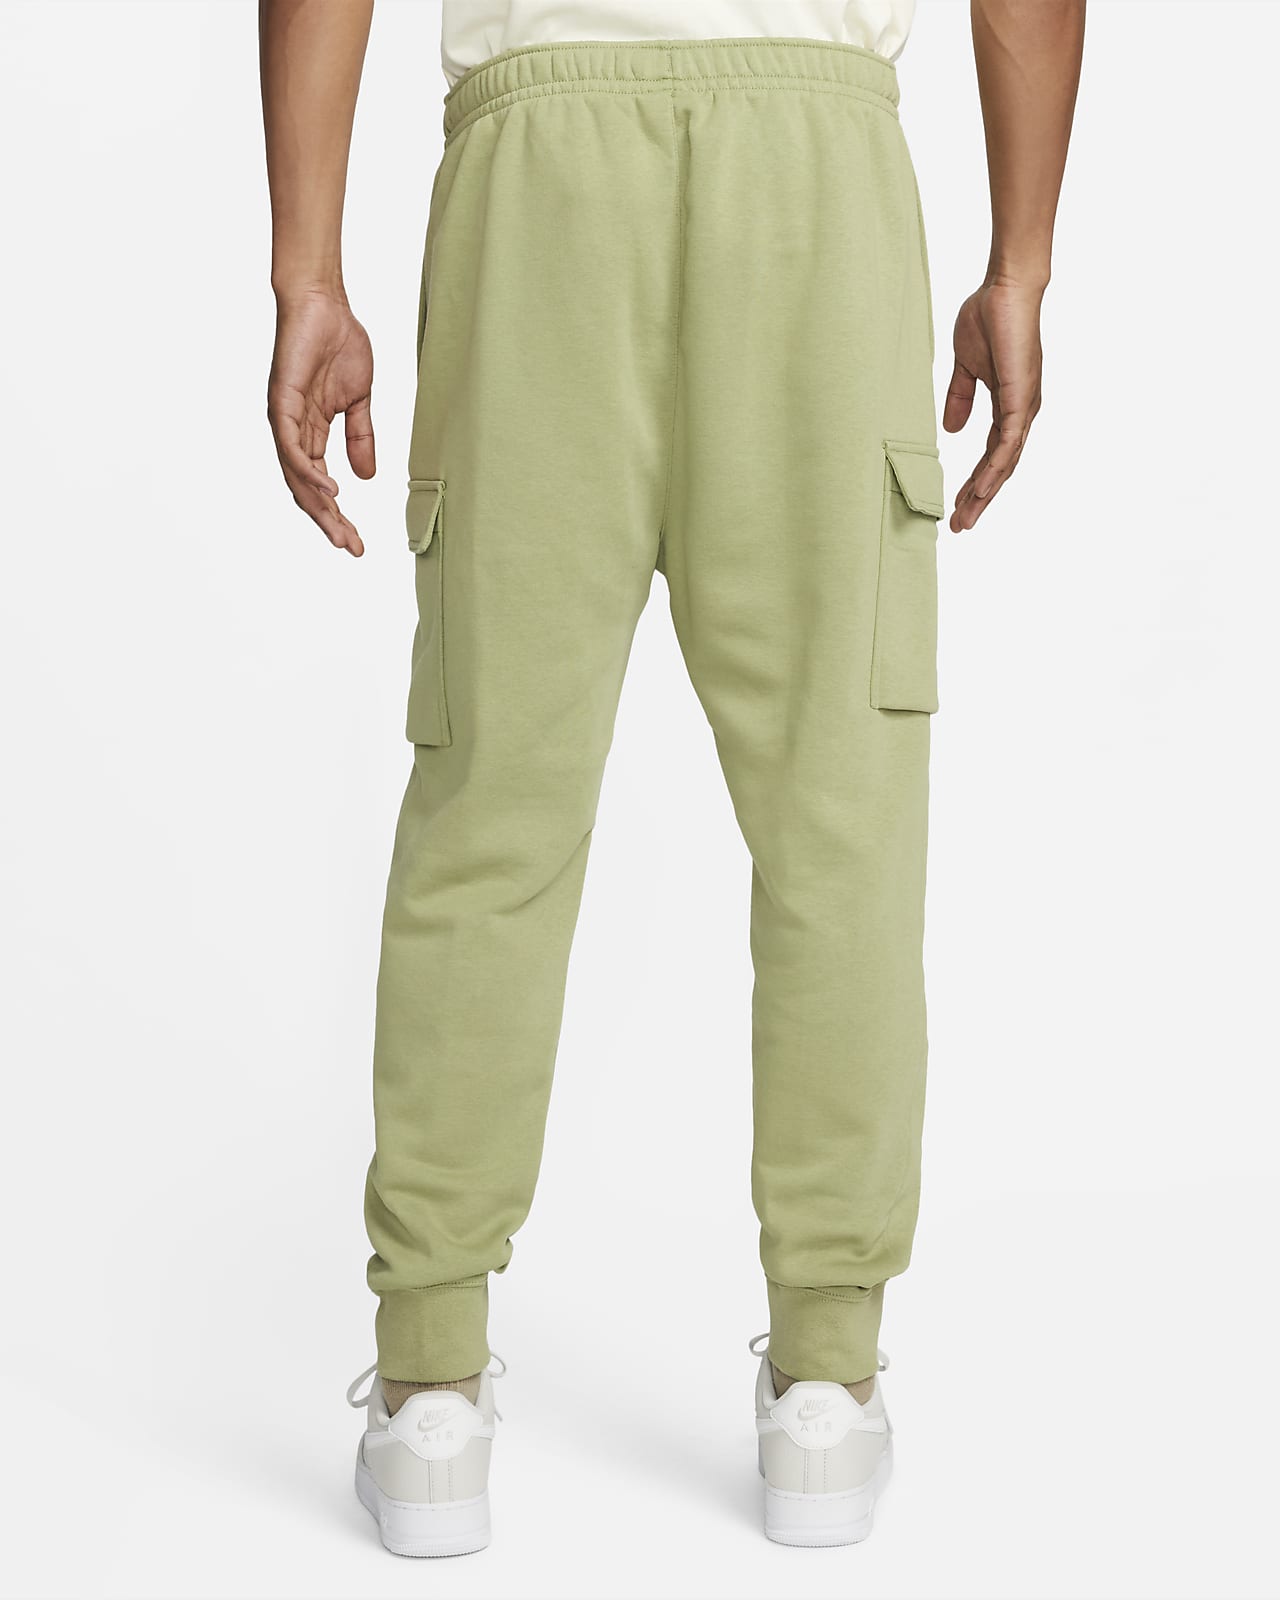 Sportswear Club Fleece Men's Cargo Pants.